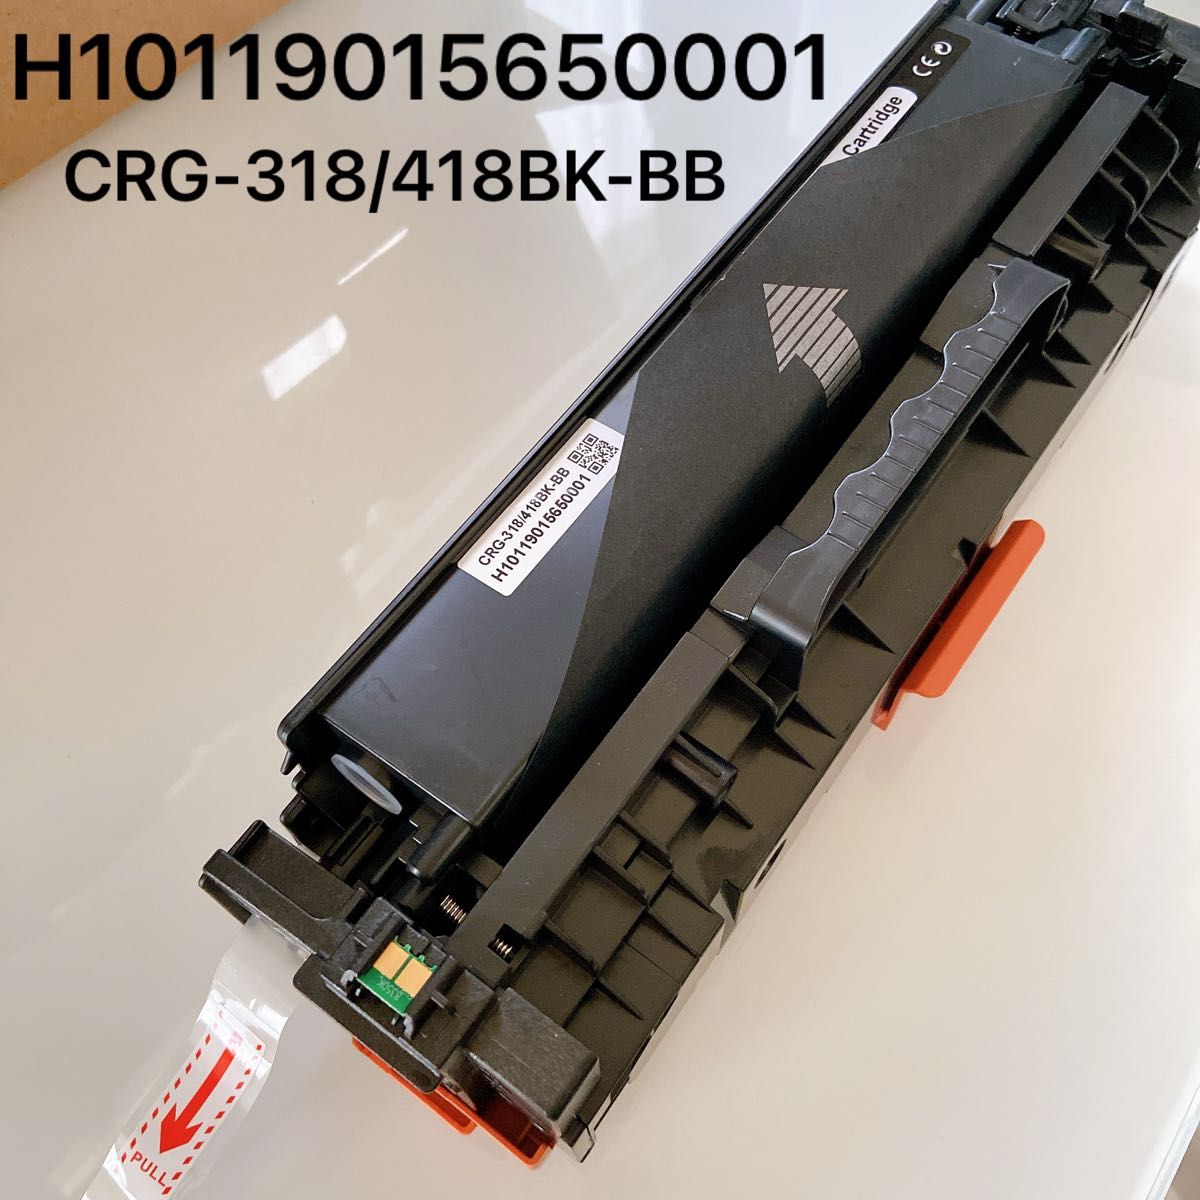 CRG-318 418BK-BB トナーカートリッジ カートリッジ 印刷 互換 トナー H10119015650001 キャノン